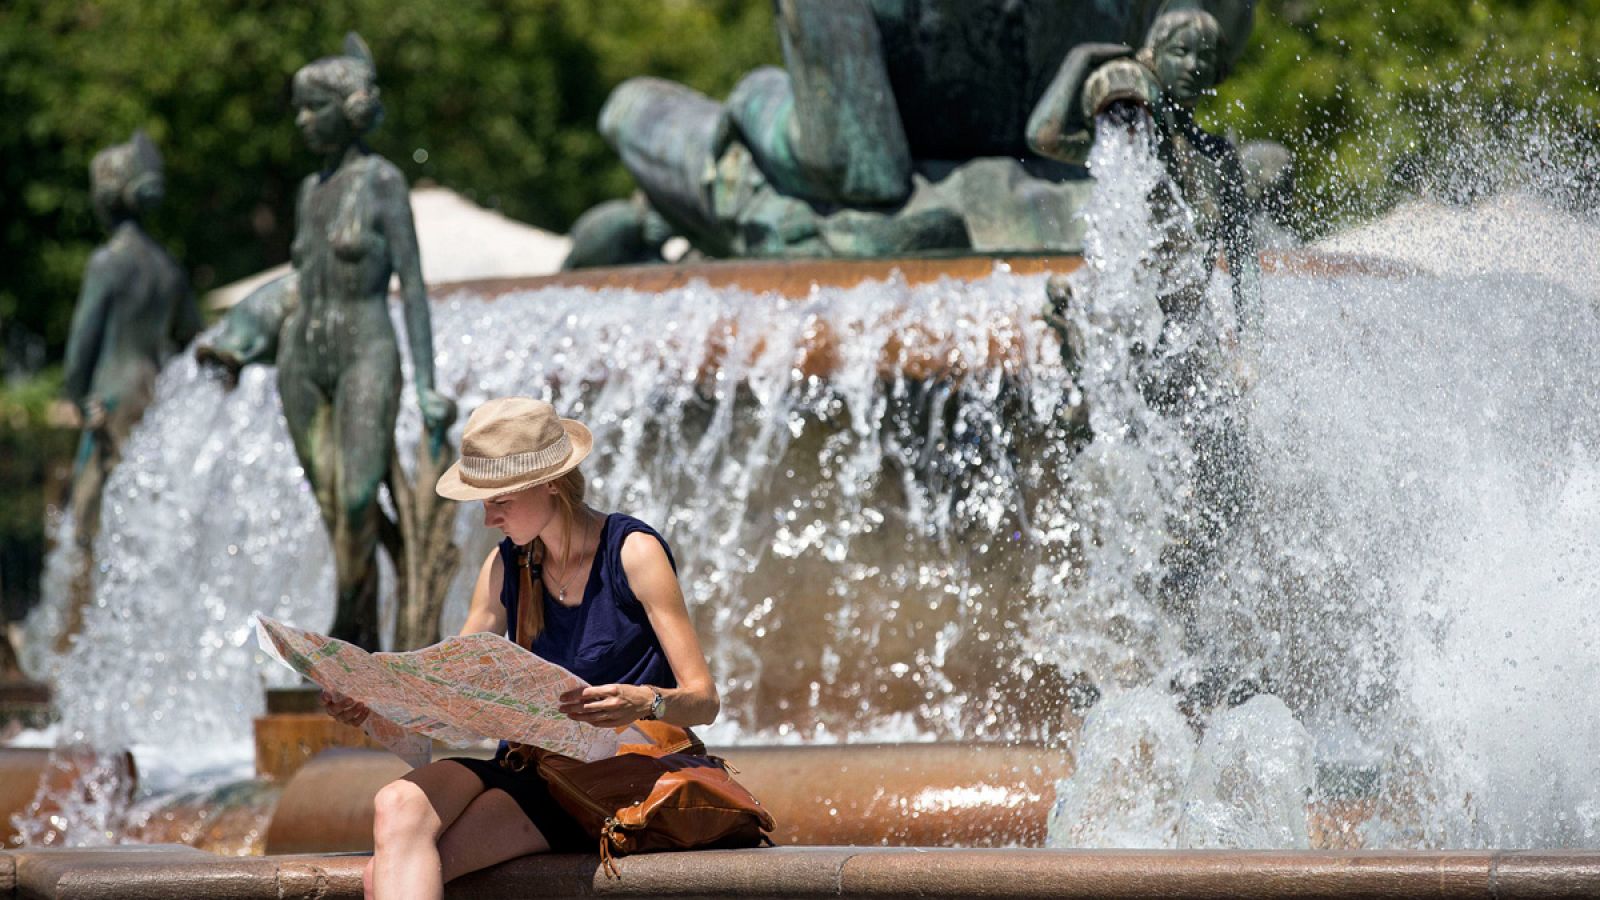 Una joven turista consulta un mapa de la ciudad sentada en la céntrica fuente de la plaza de la Virgen de Valencia